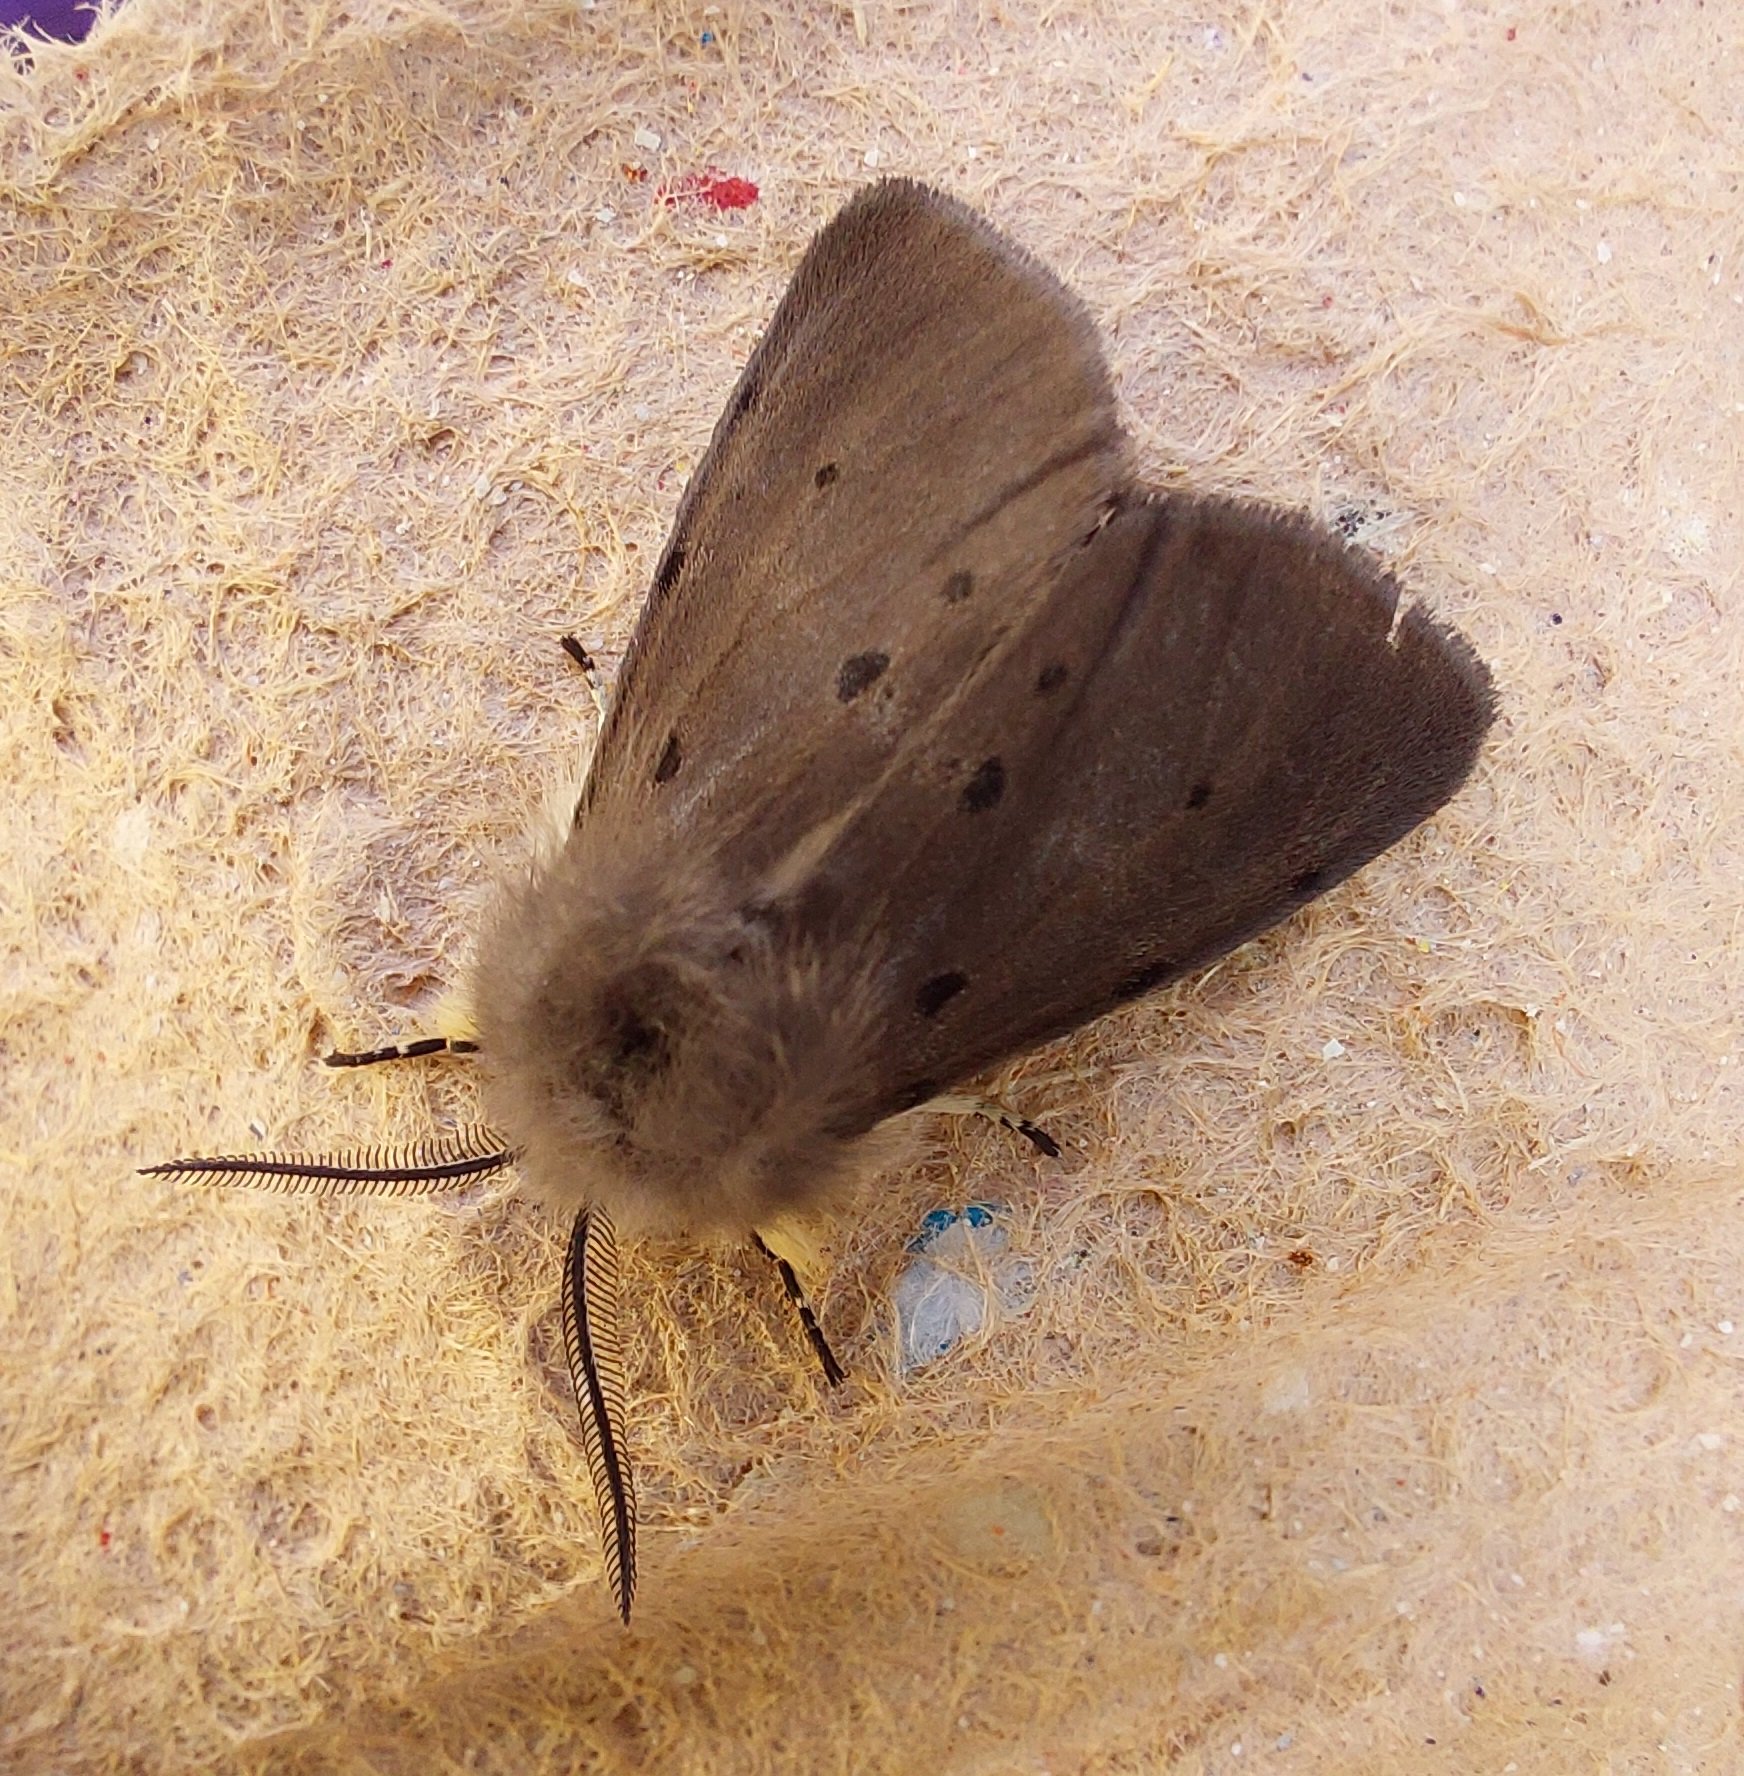 #745 Muslin Moth (Diaphora mendica)